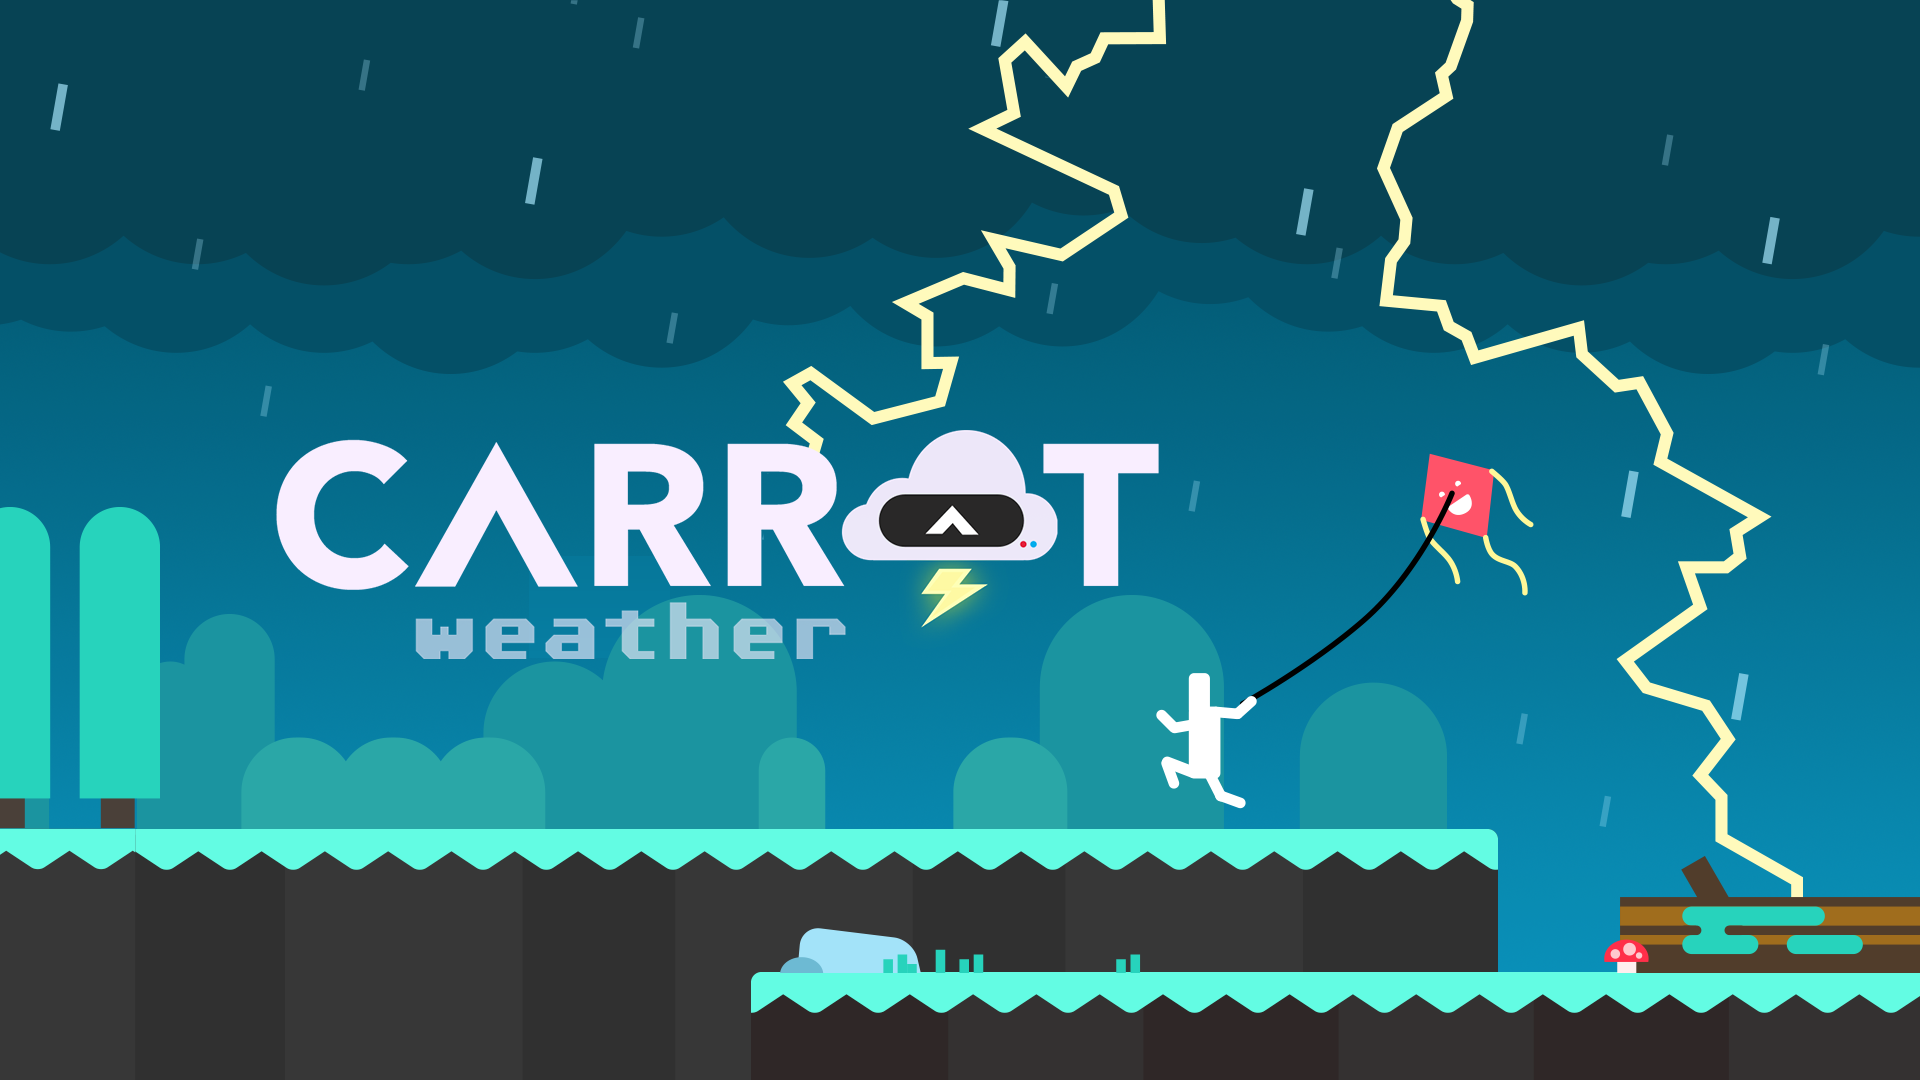 CARROT5 pogodynka z poczuciem humory ARKit iOS 11